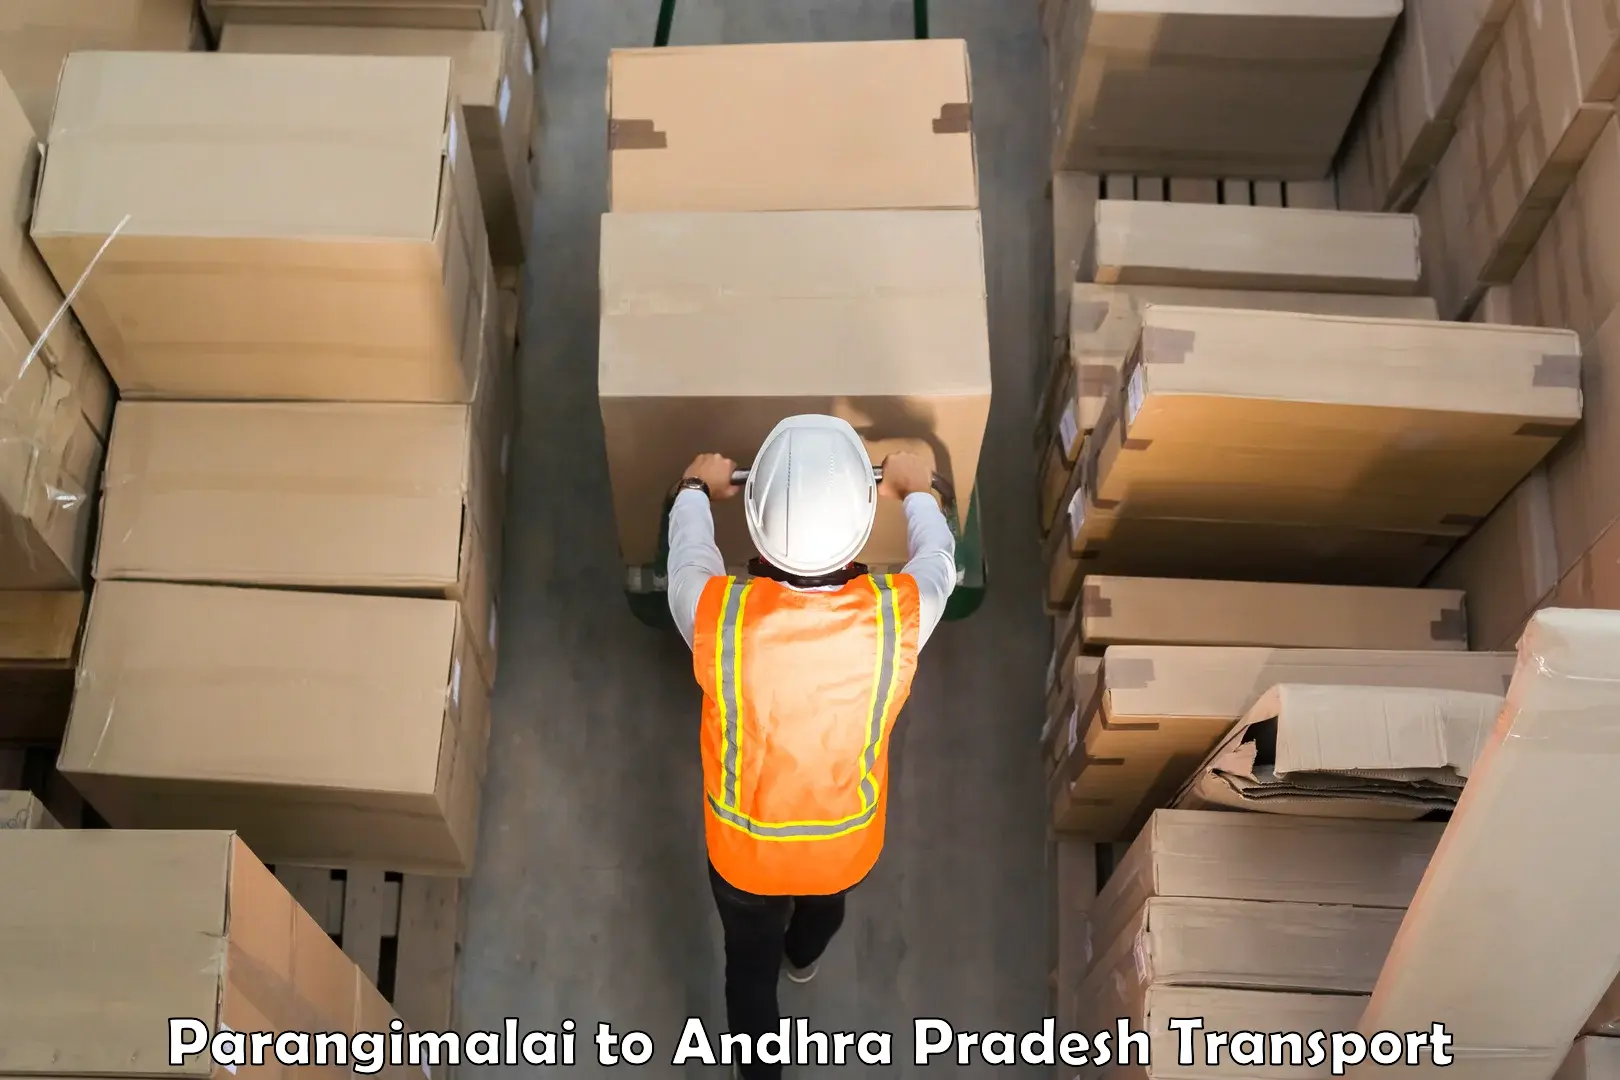 International cargo transportation services Parangimalai to Gollaprollu